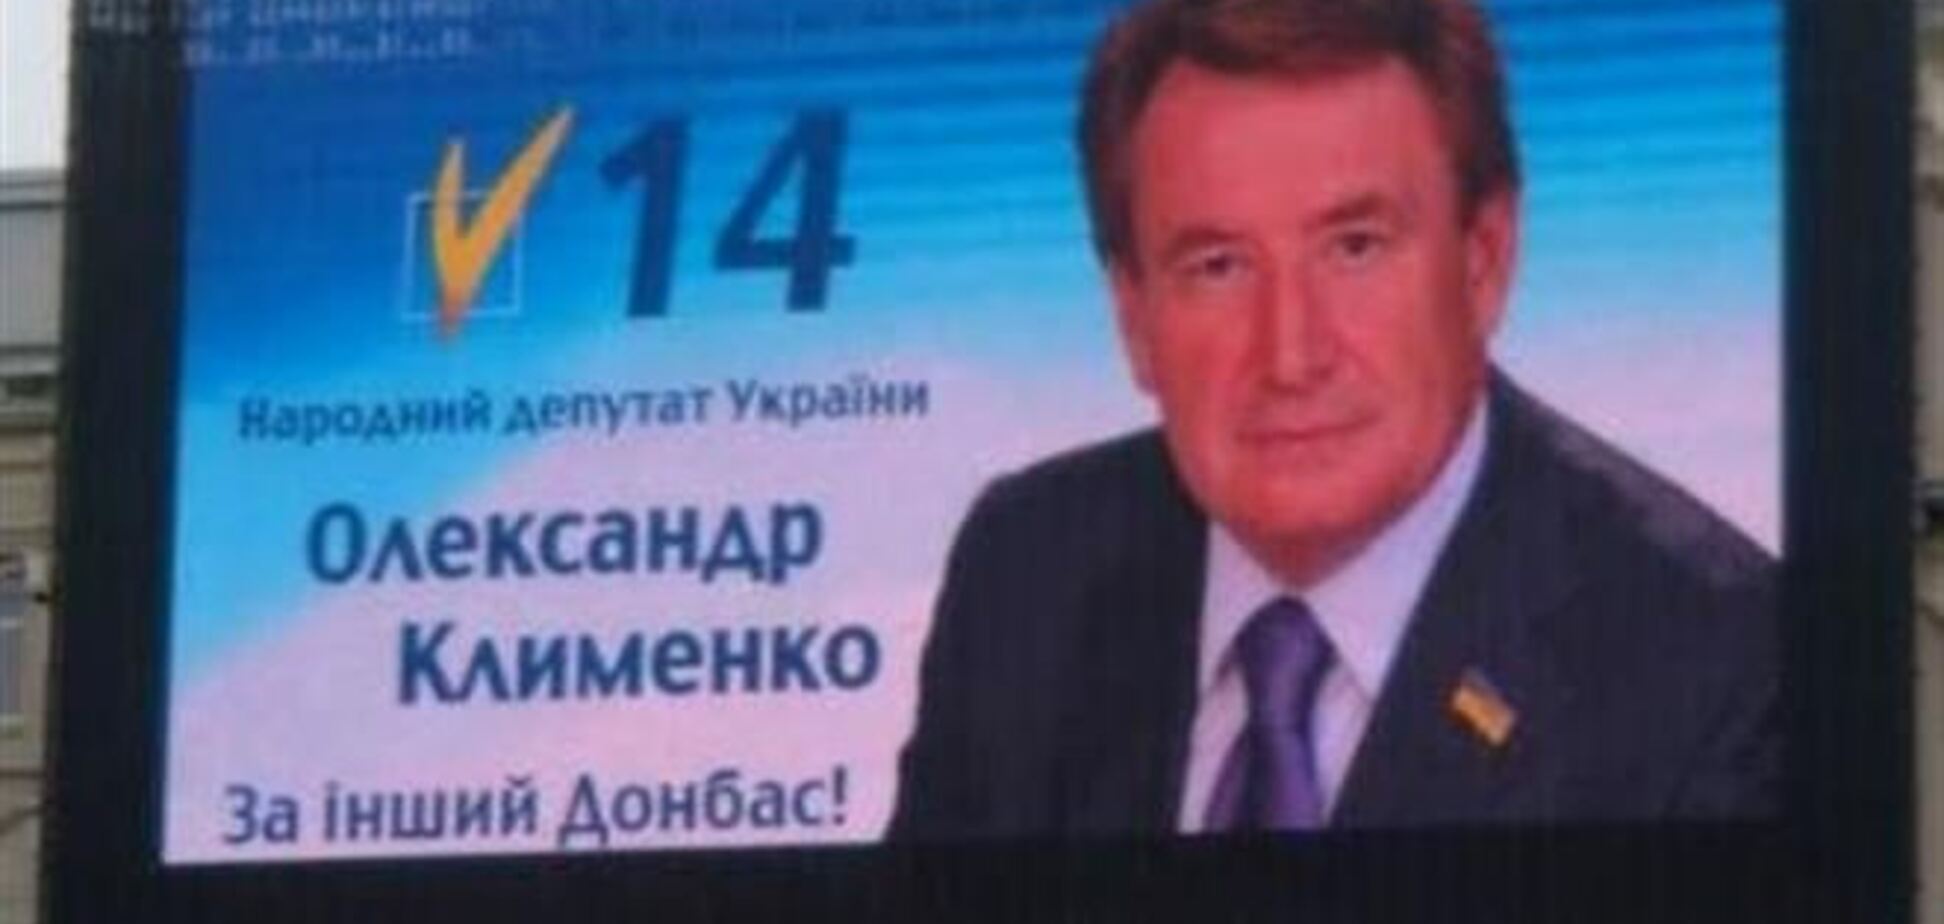 Украинскую народную партию возглавил 'донецкий'